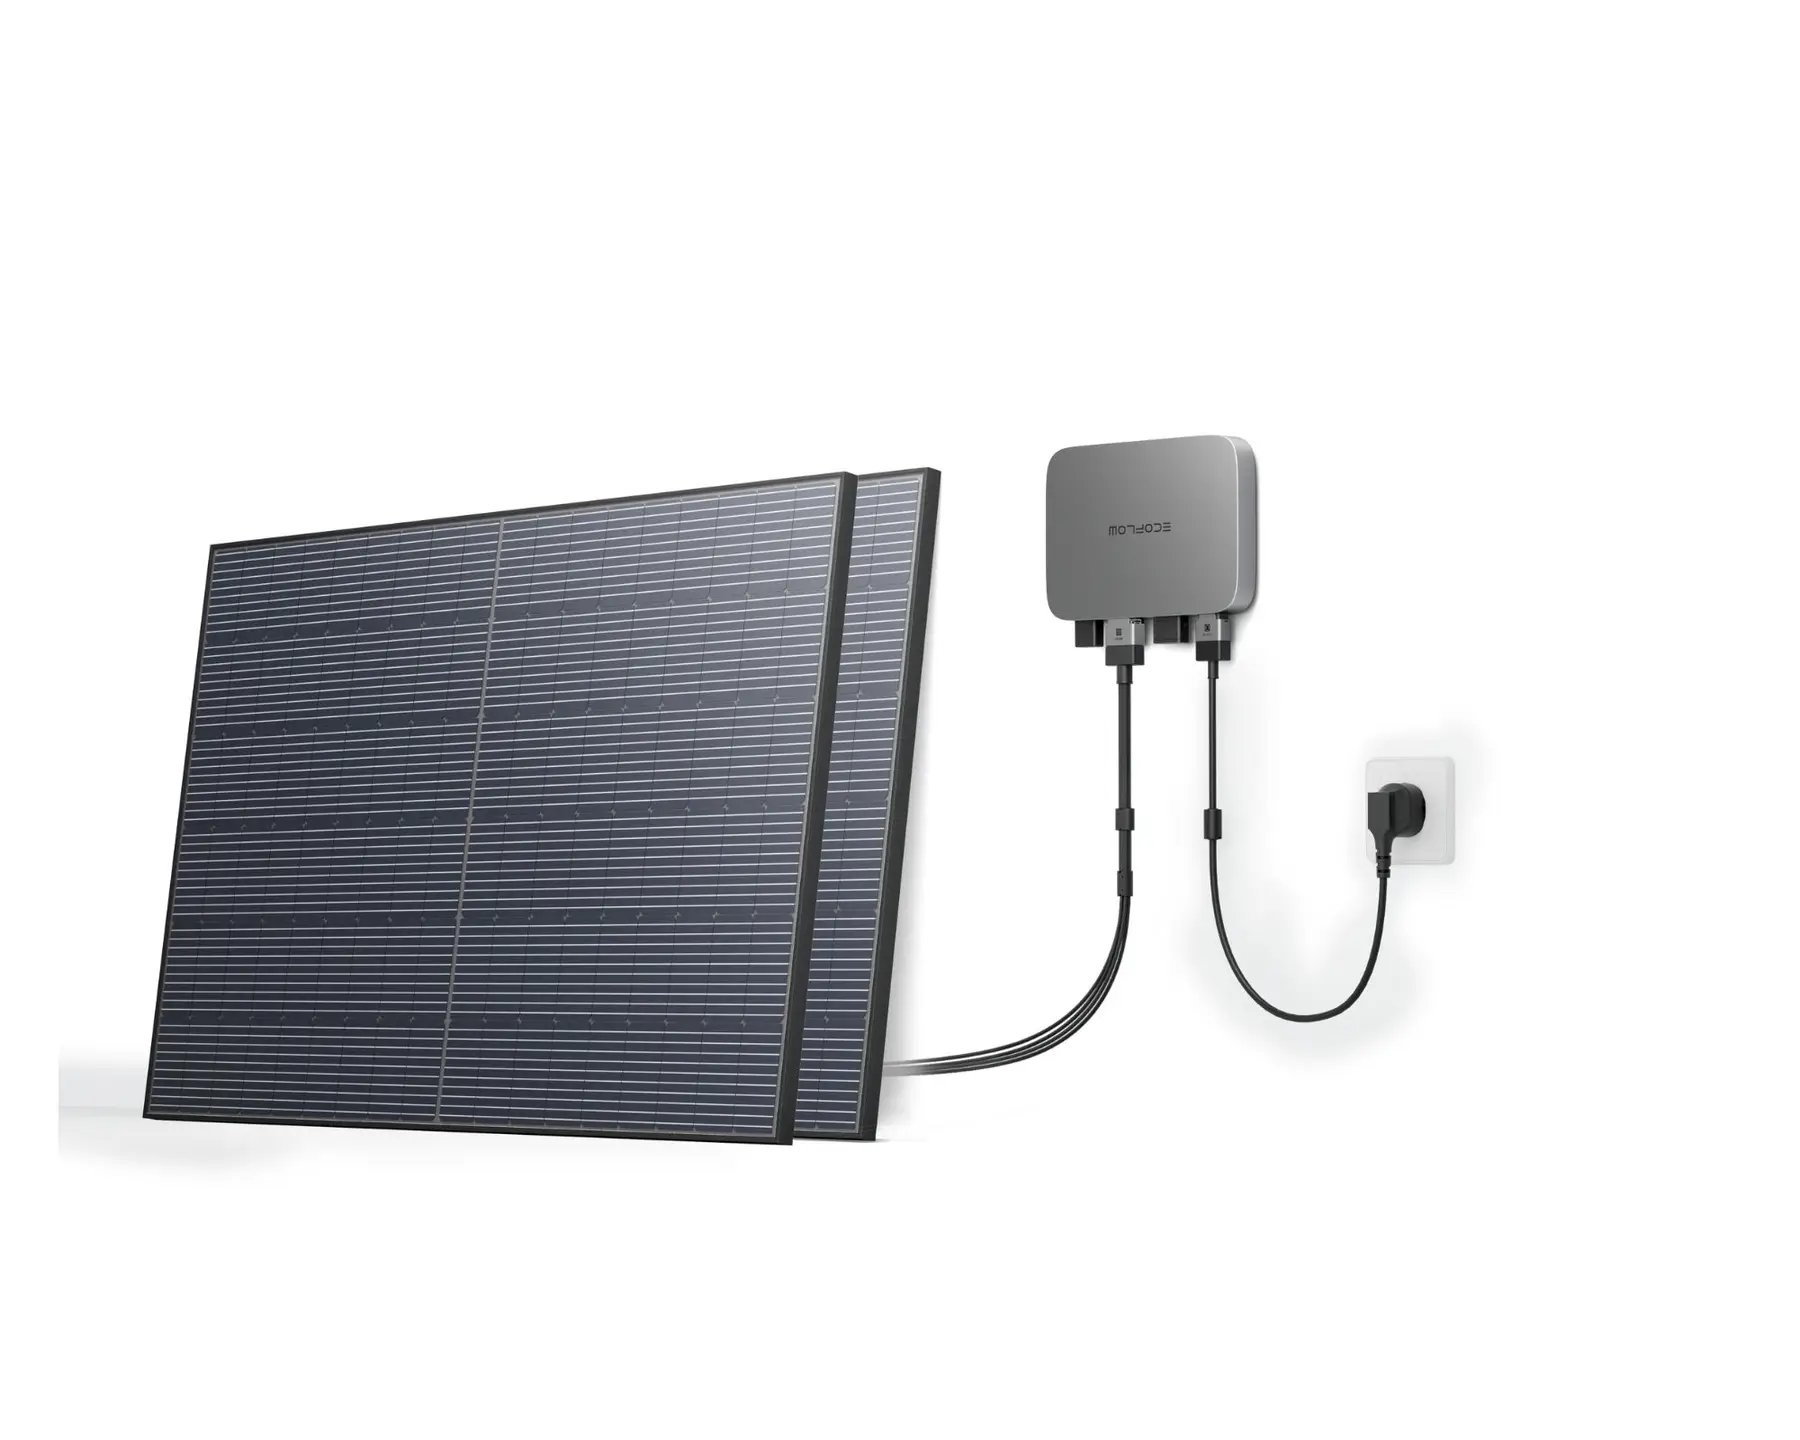 Комплект энегонезависимости EcoFlow PowerStream - микроинвертор 800W + 2 x 400W стационарные солнечные панели